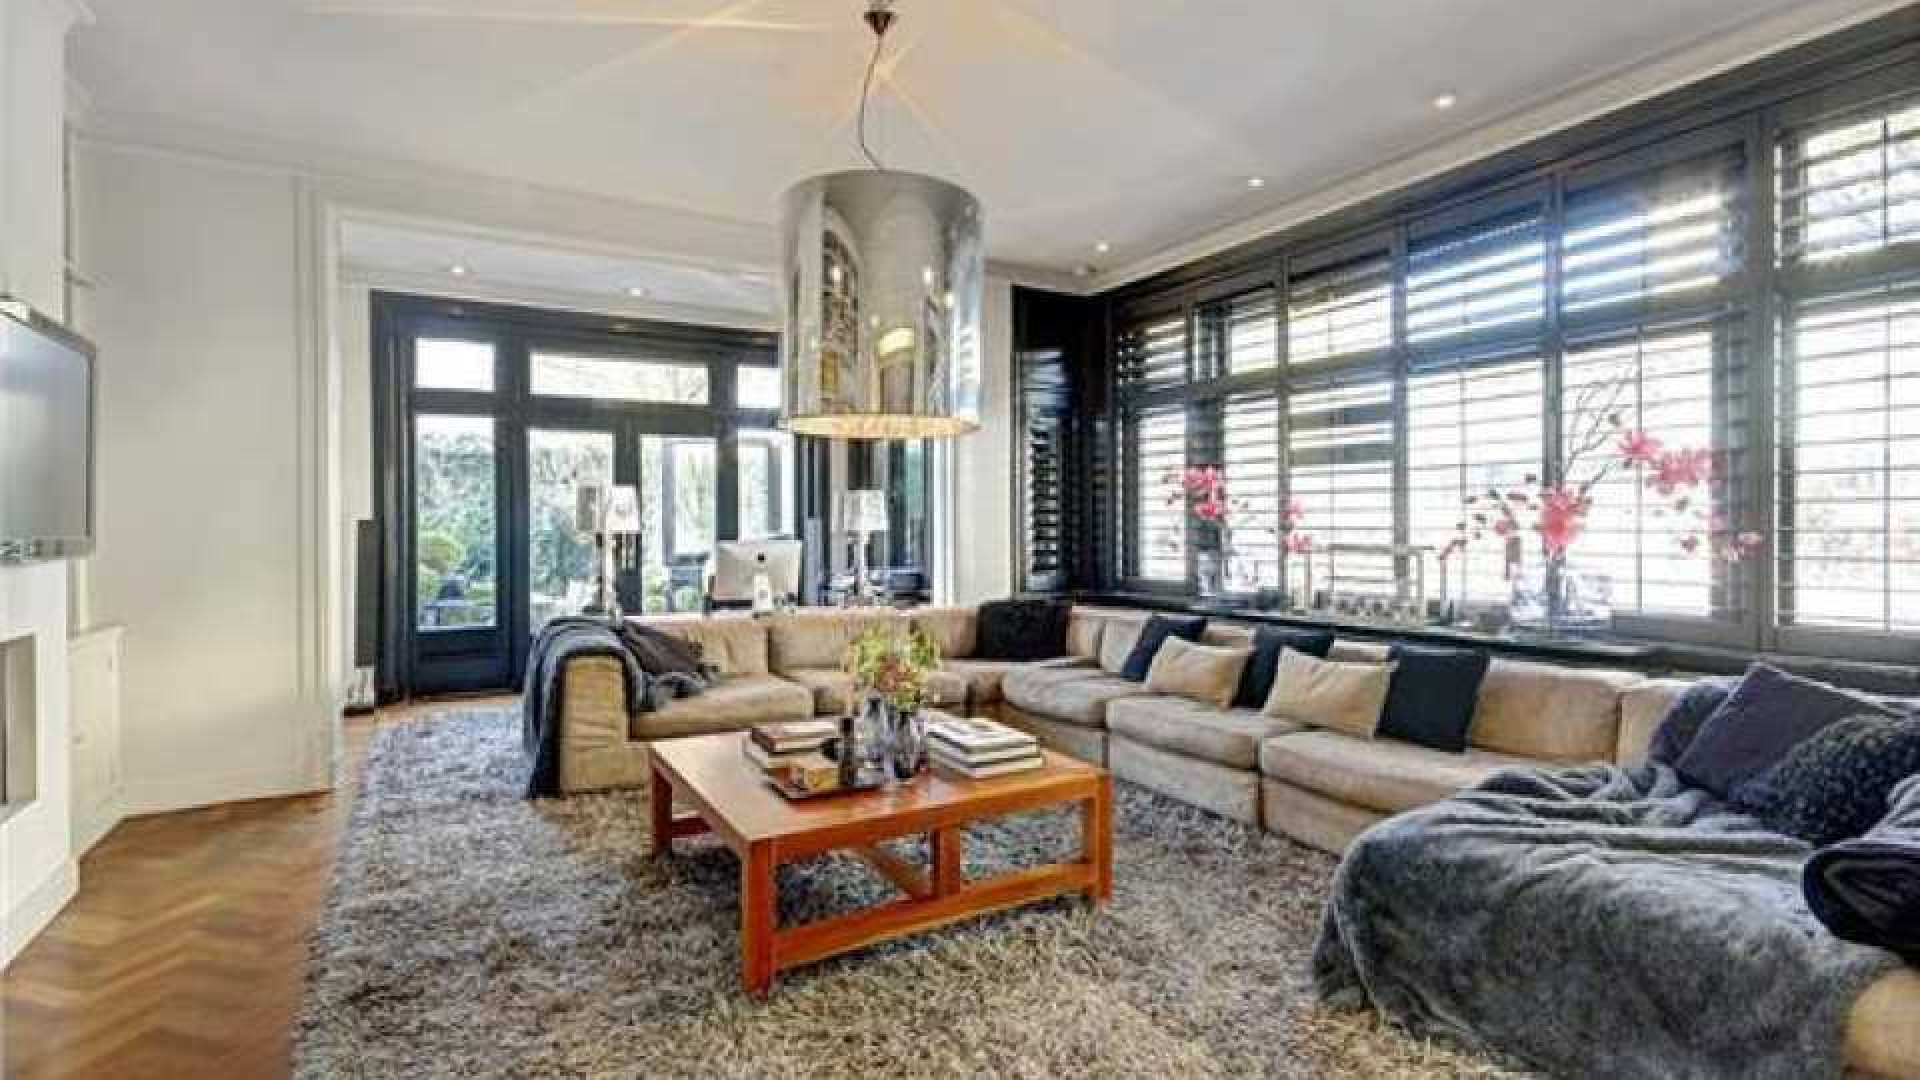 Frank Rijkaard koopt miljoenen villa in Amsterdam Zuid. Zie foto's 4